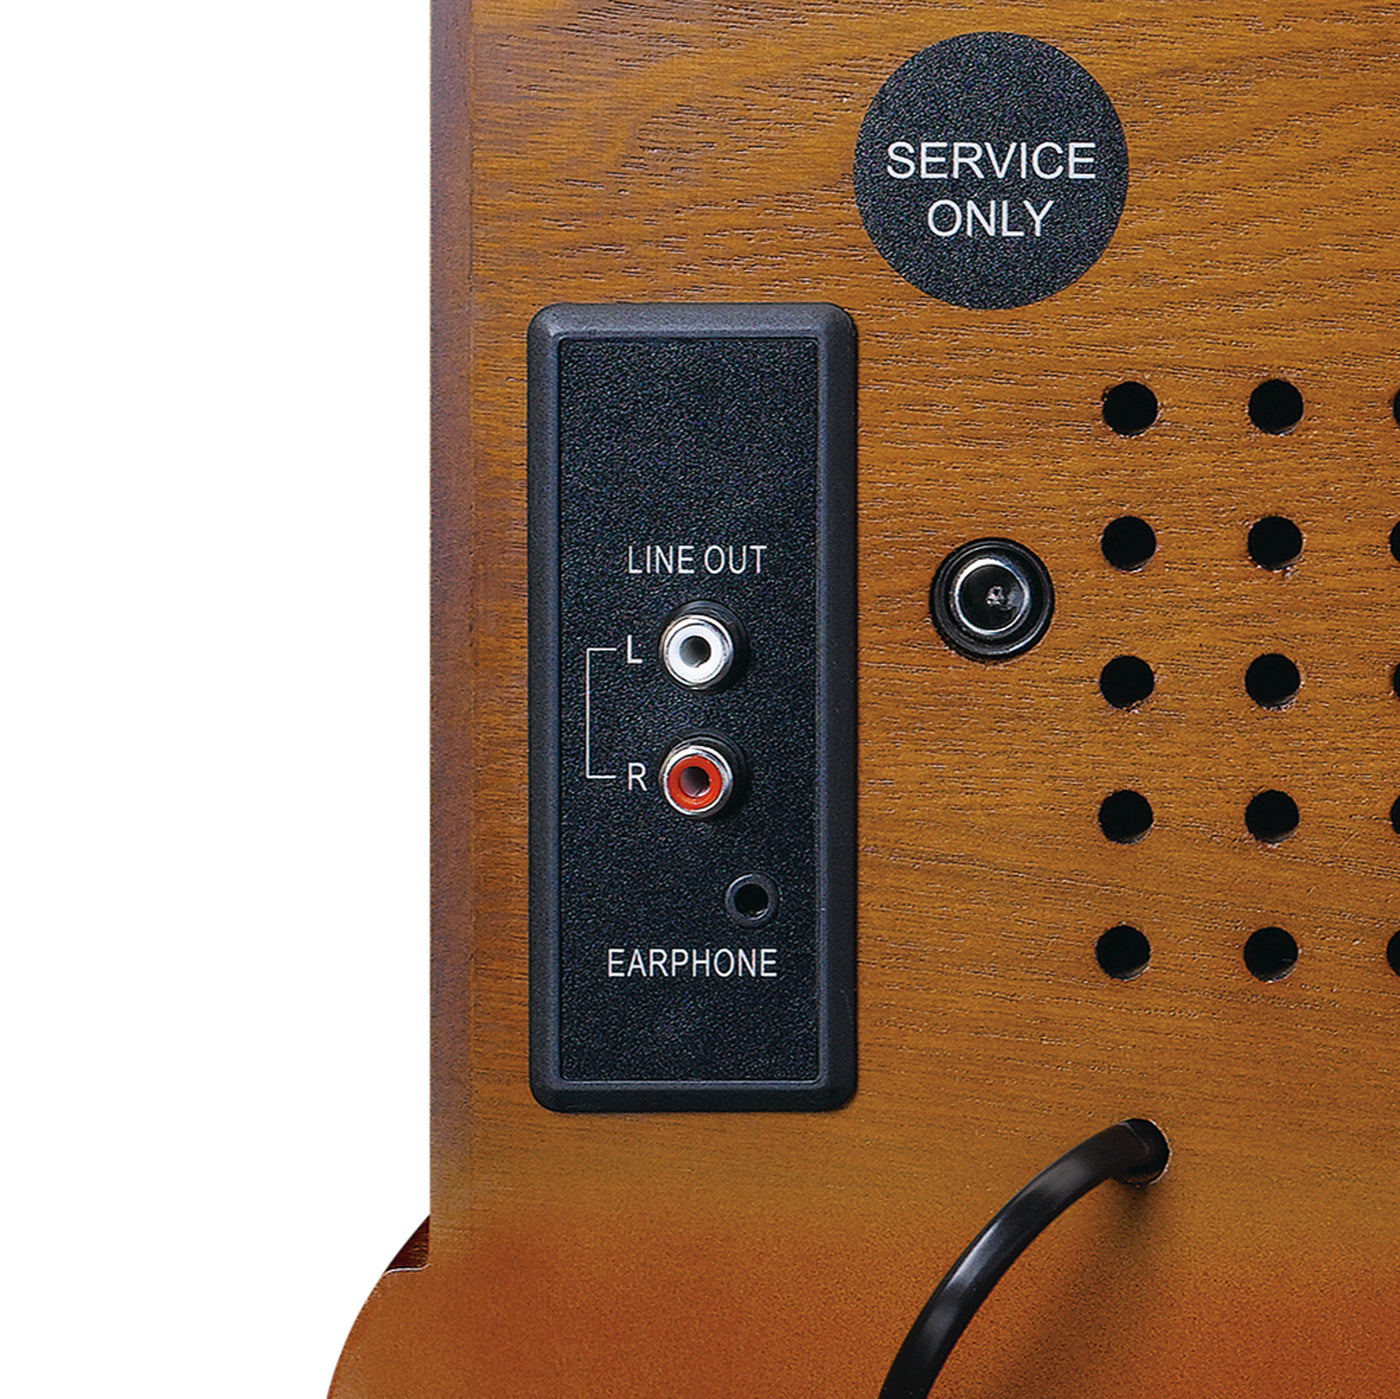 CLASSIC PHONO TCD-2570 - Platenspeler met DAB+/FM radio, USB encoding, CD- en casettespeler - Hout